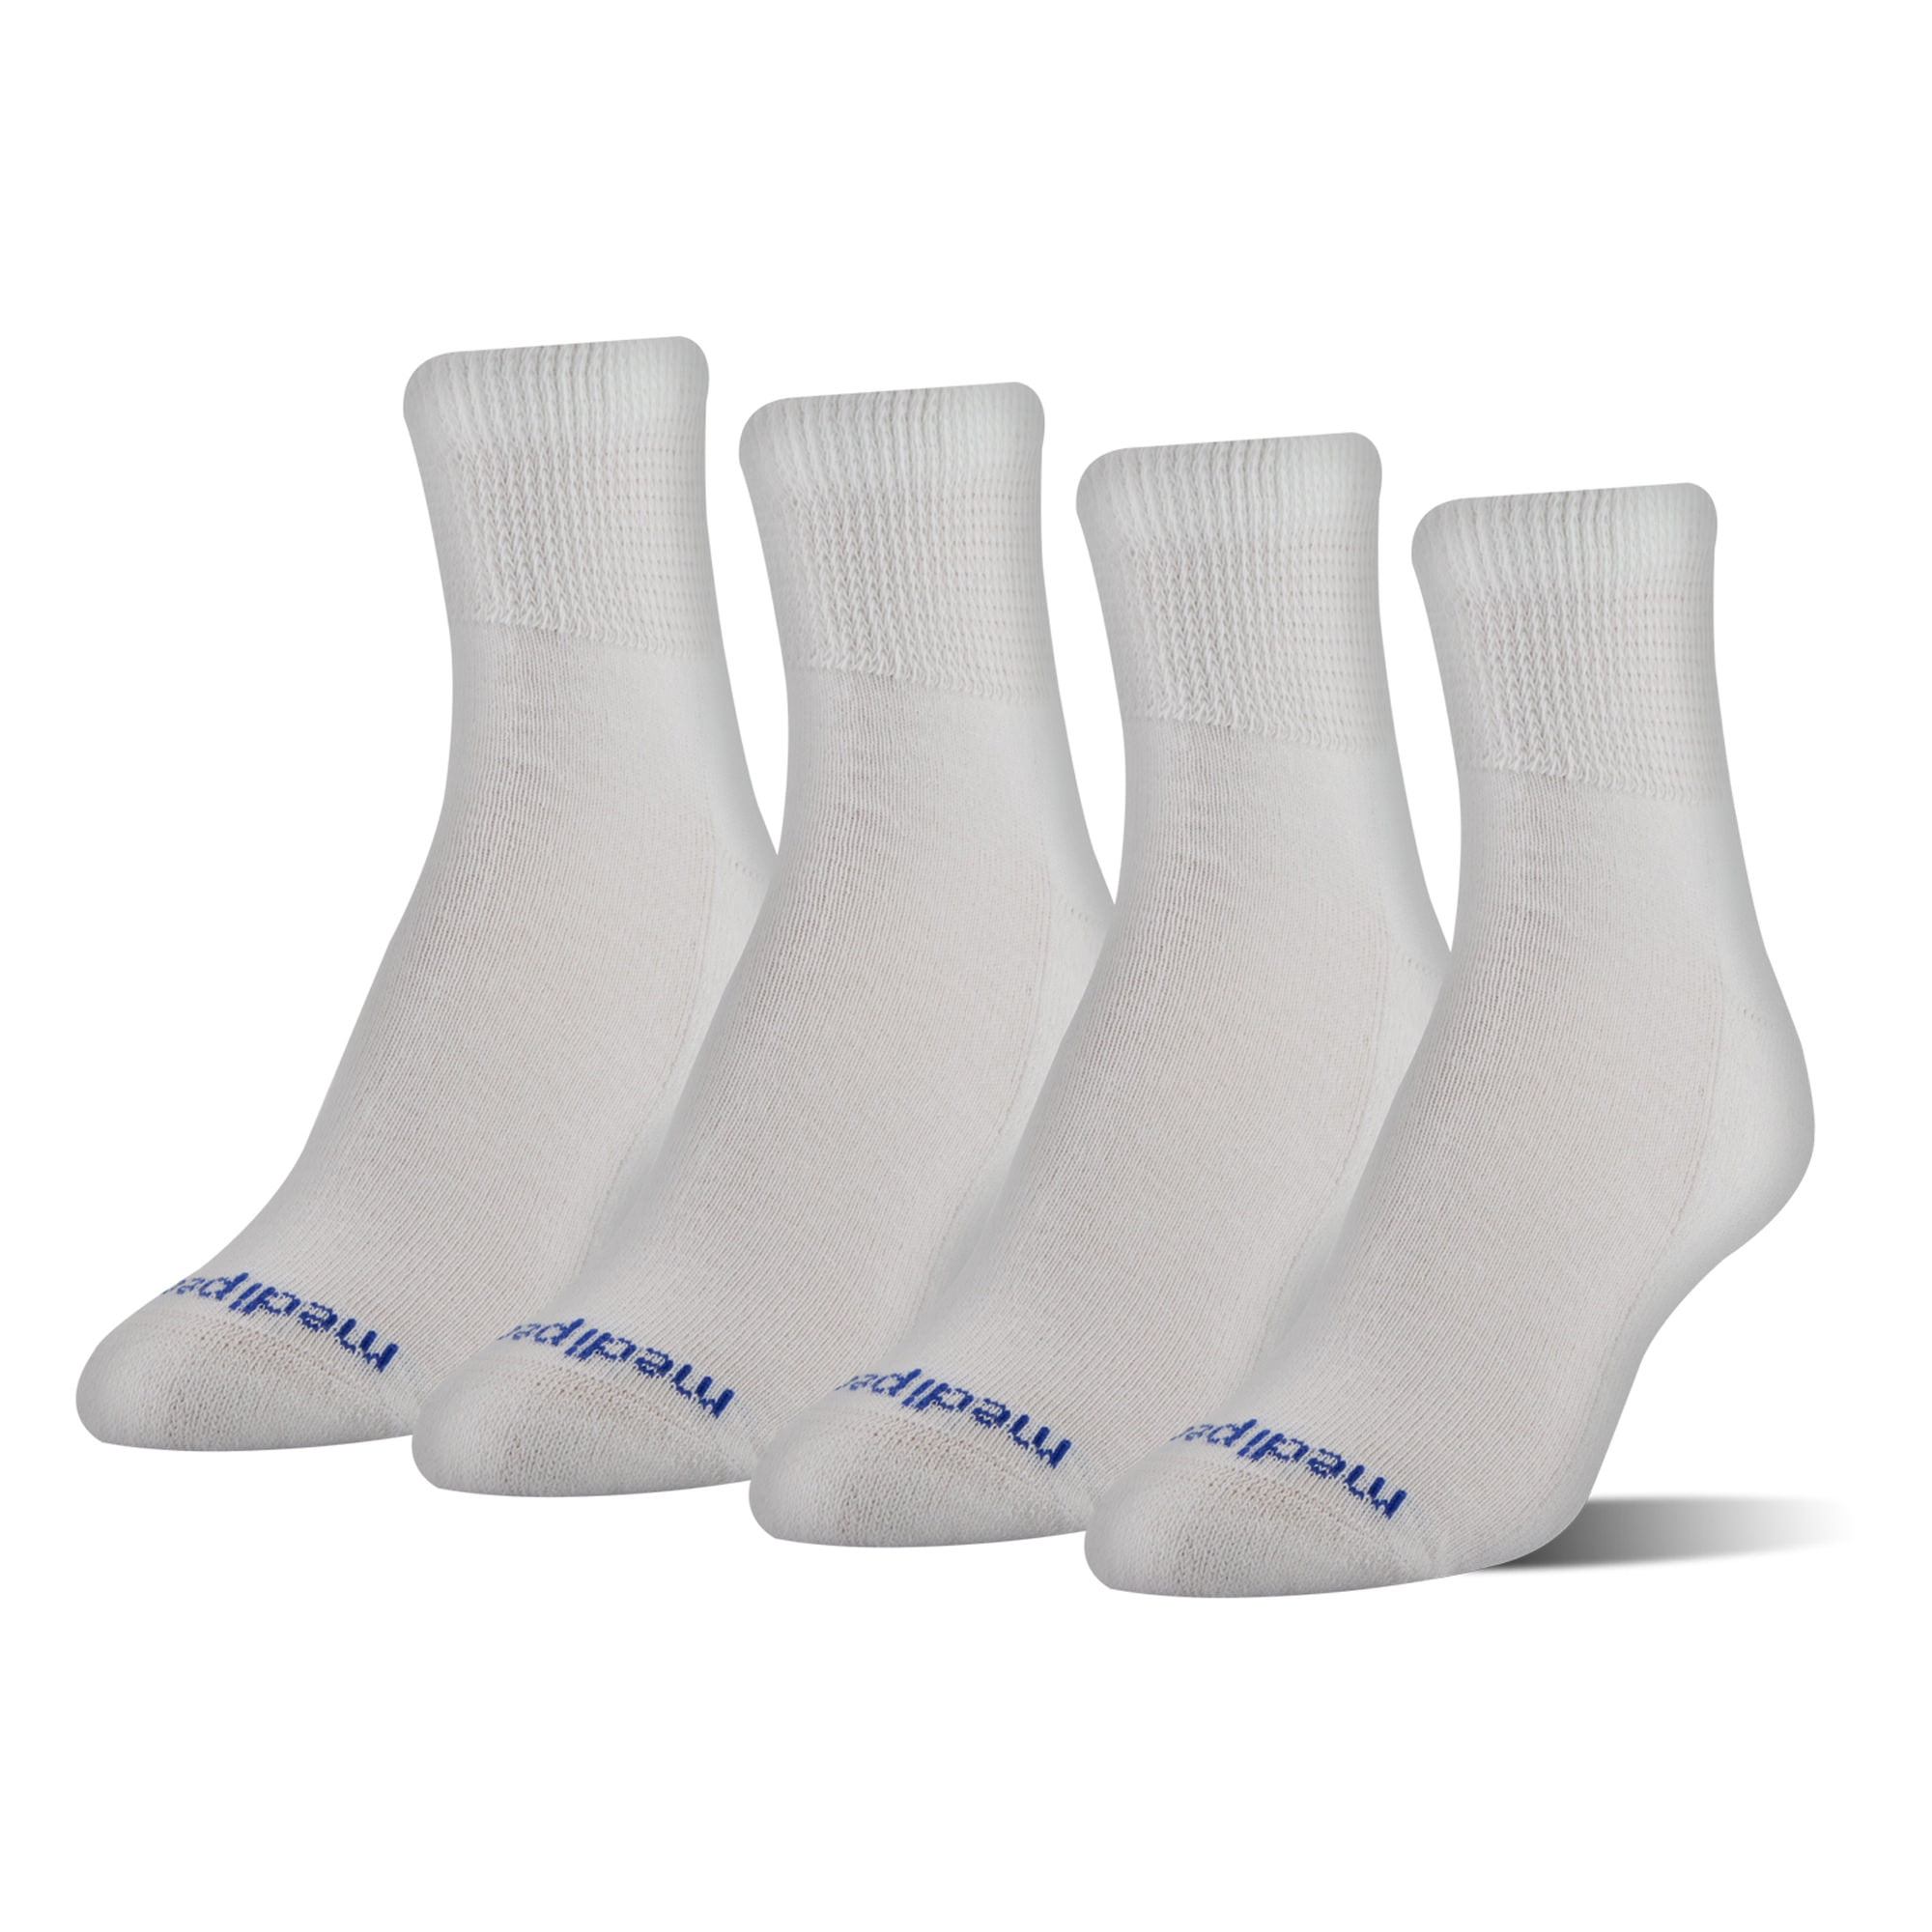 Details about   Lot Of 3 Med Peds Compression Socks 